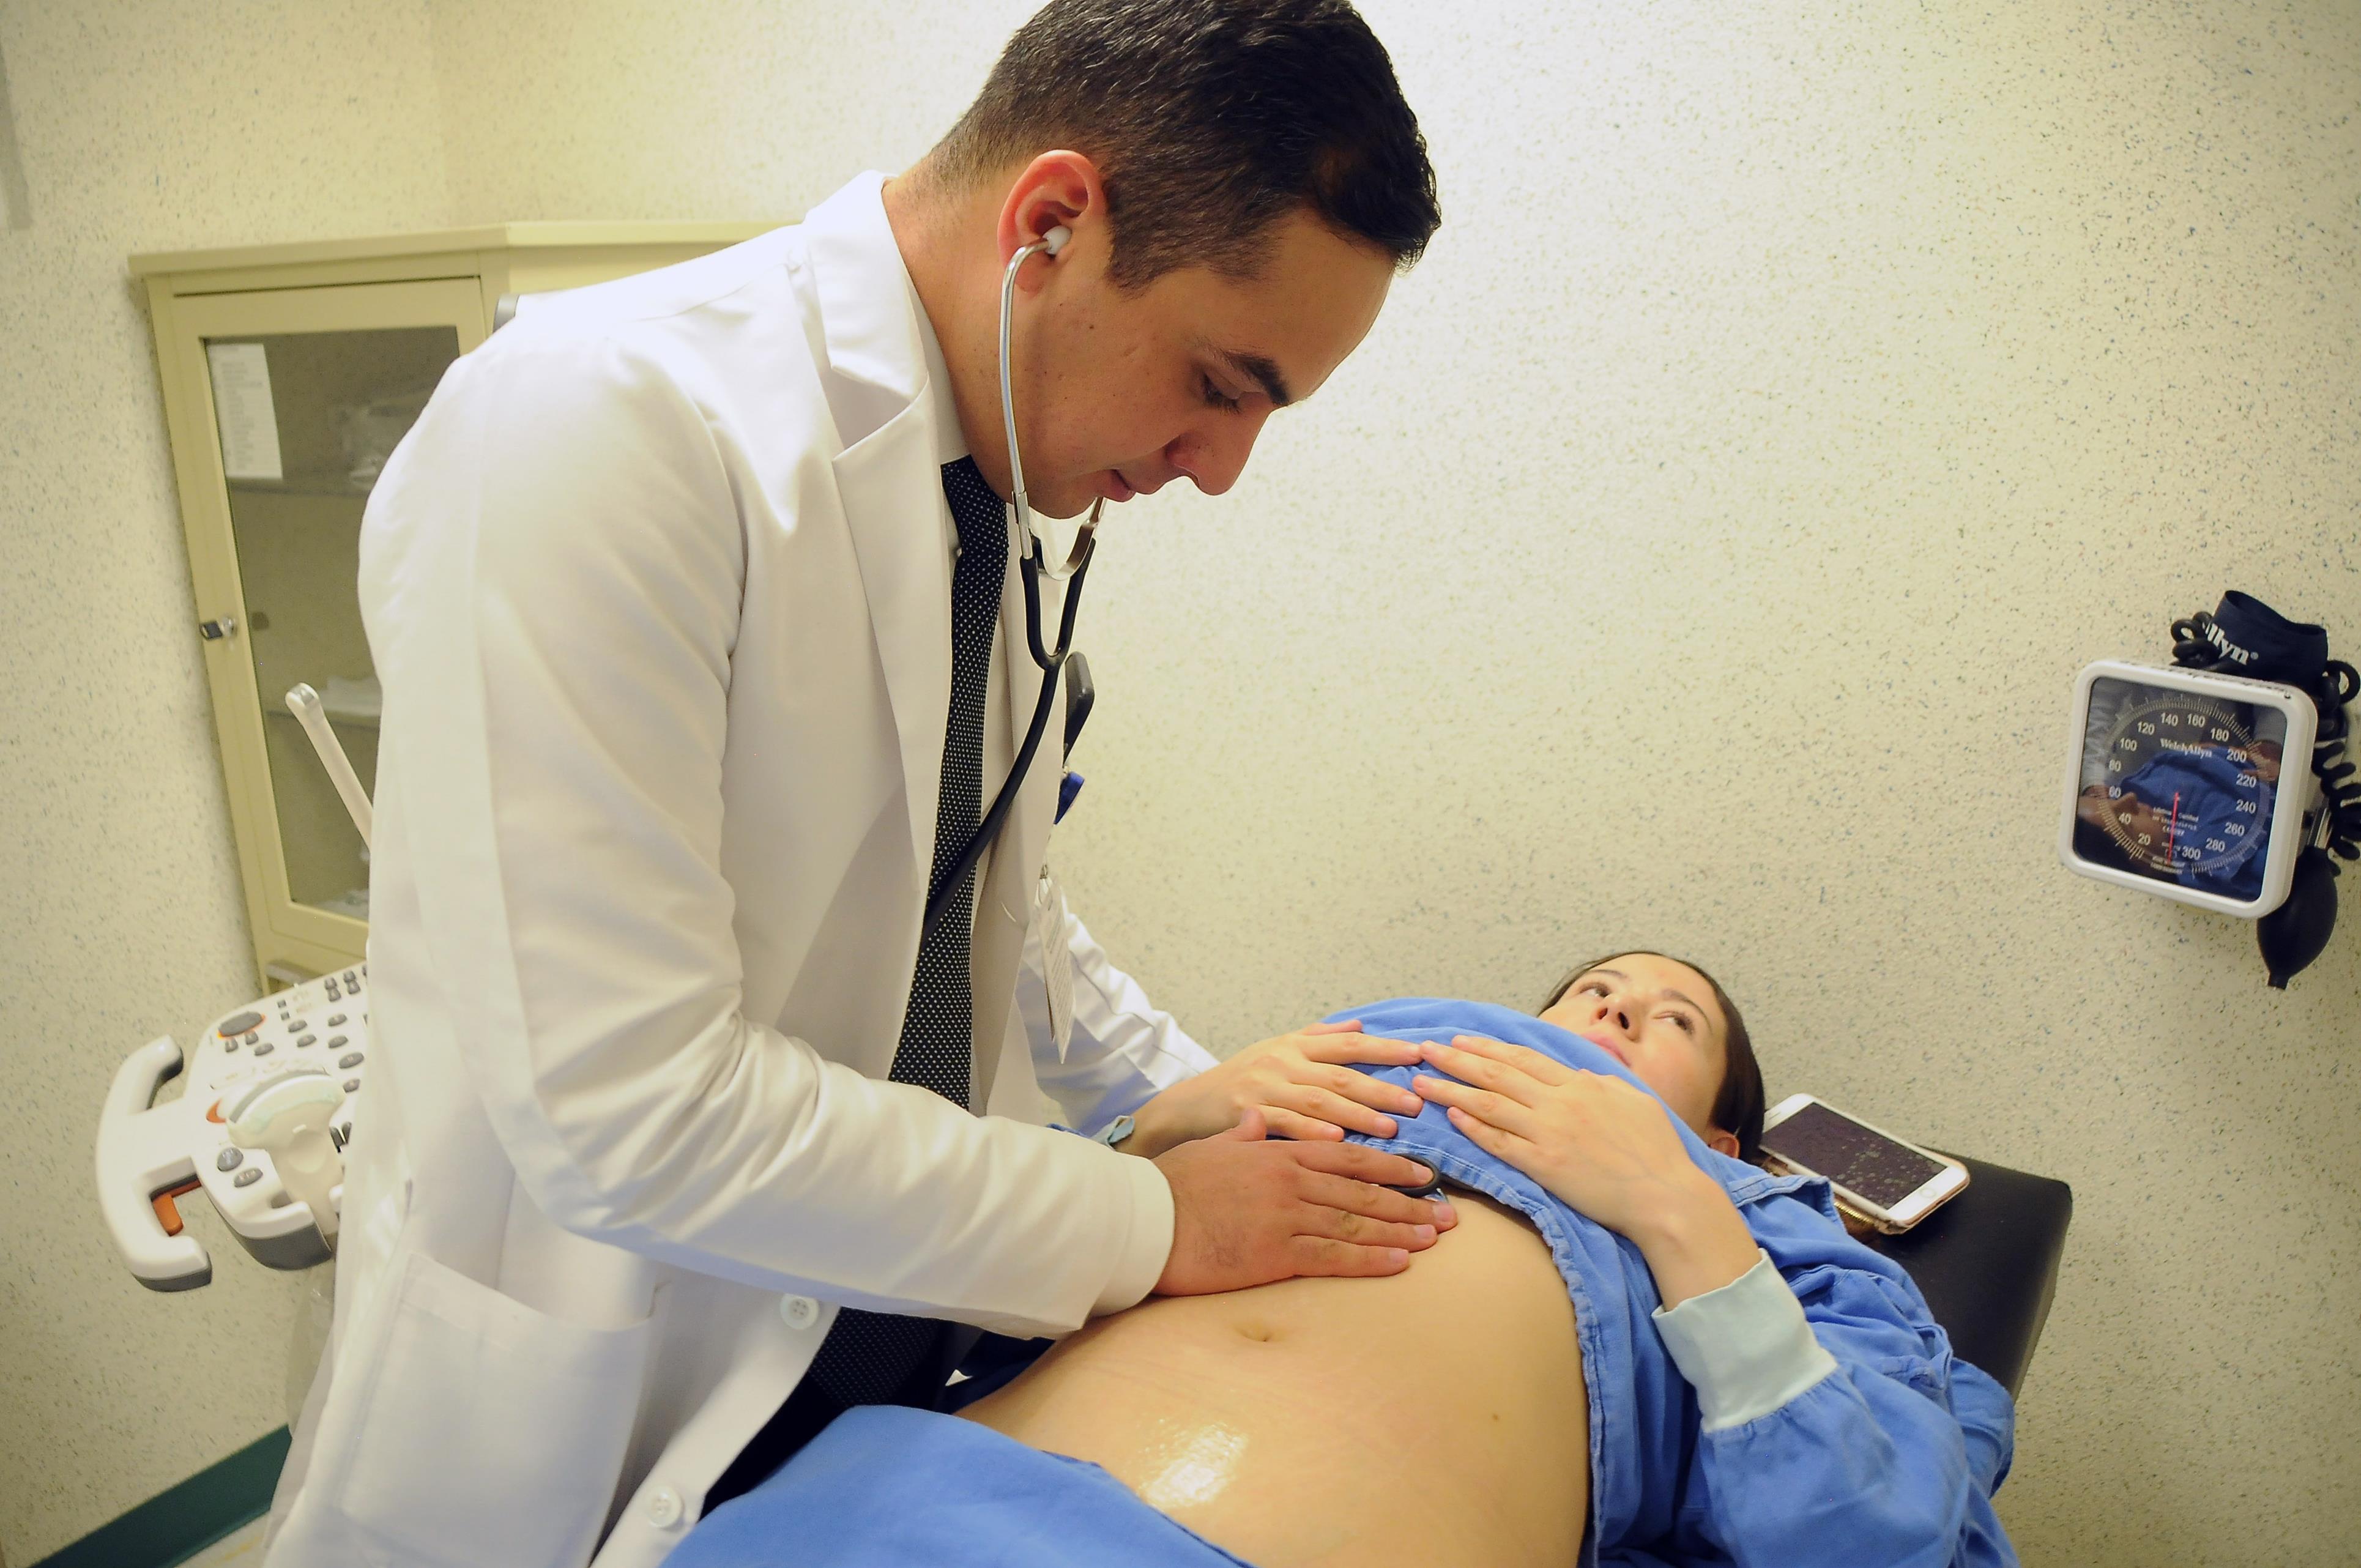 Clínica de Fertilidad “Biología de la Reproducción” logra más de 90 embarazos #regionmx